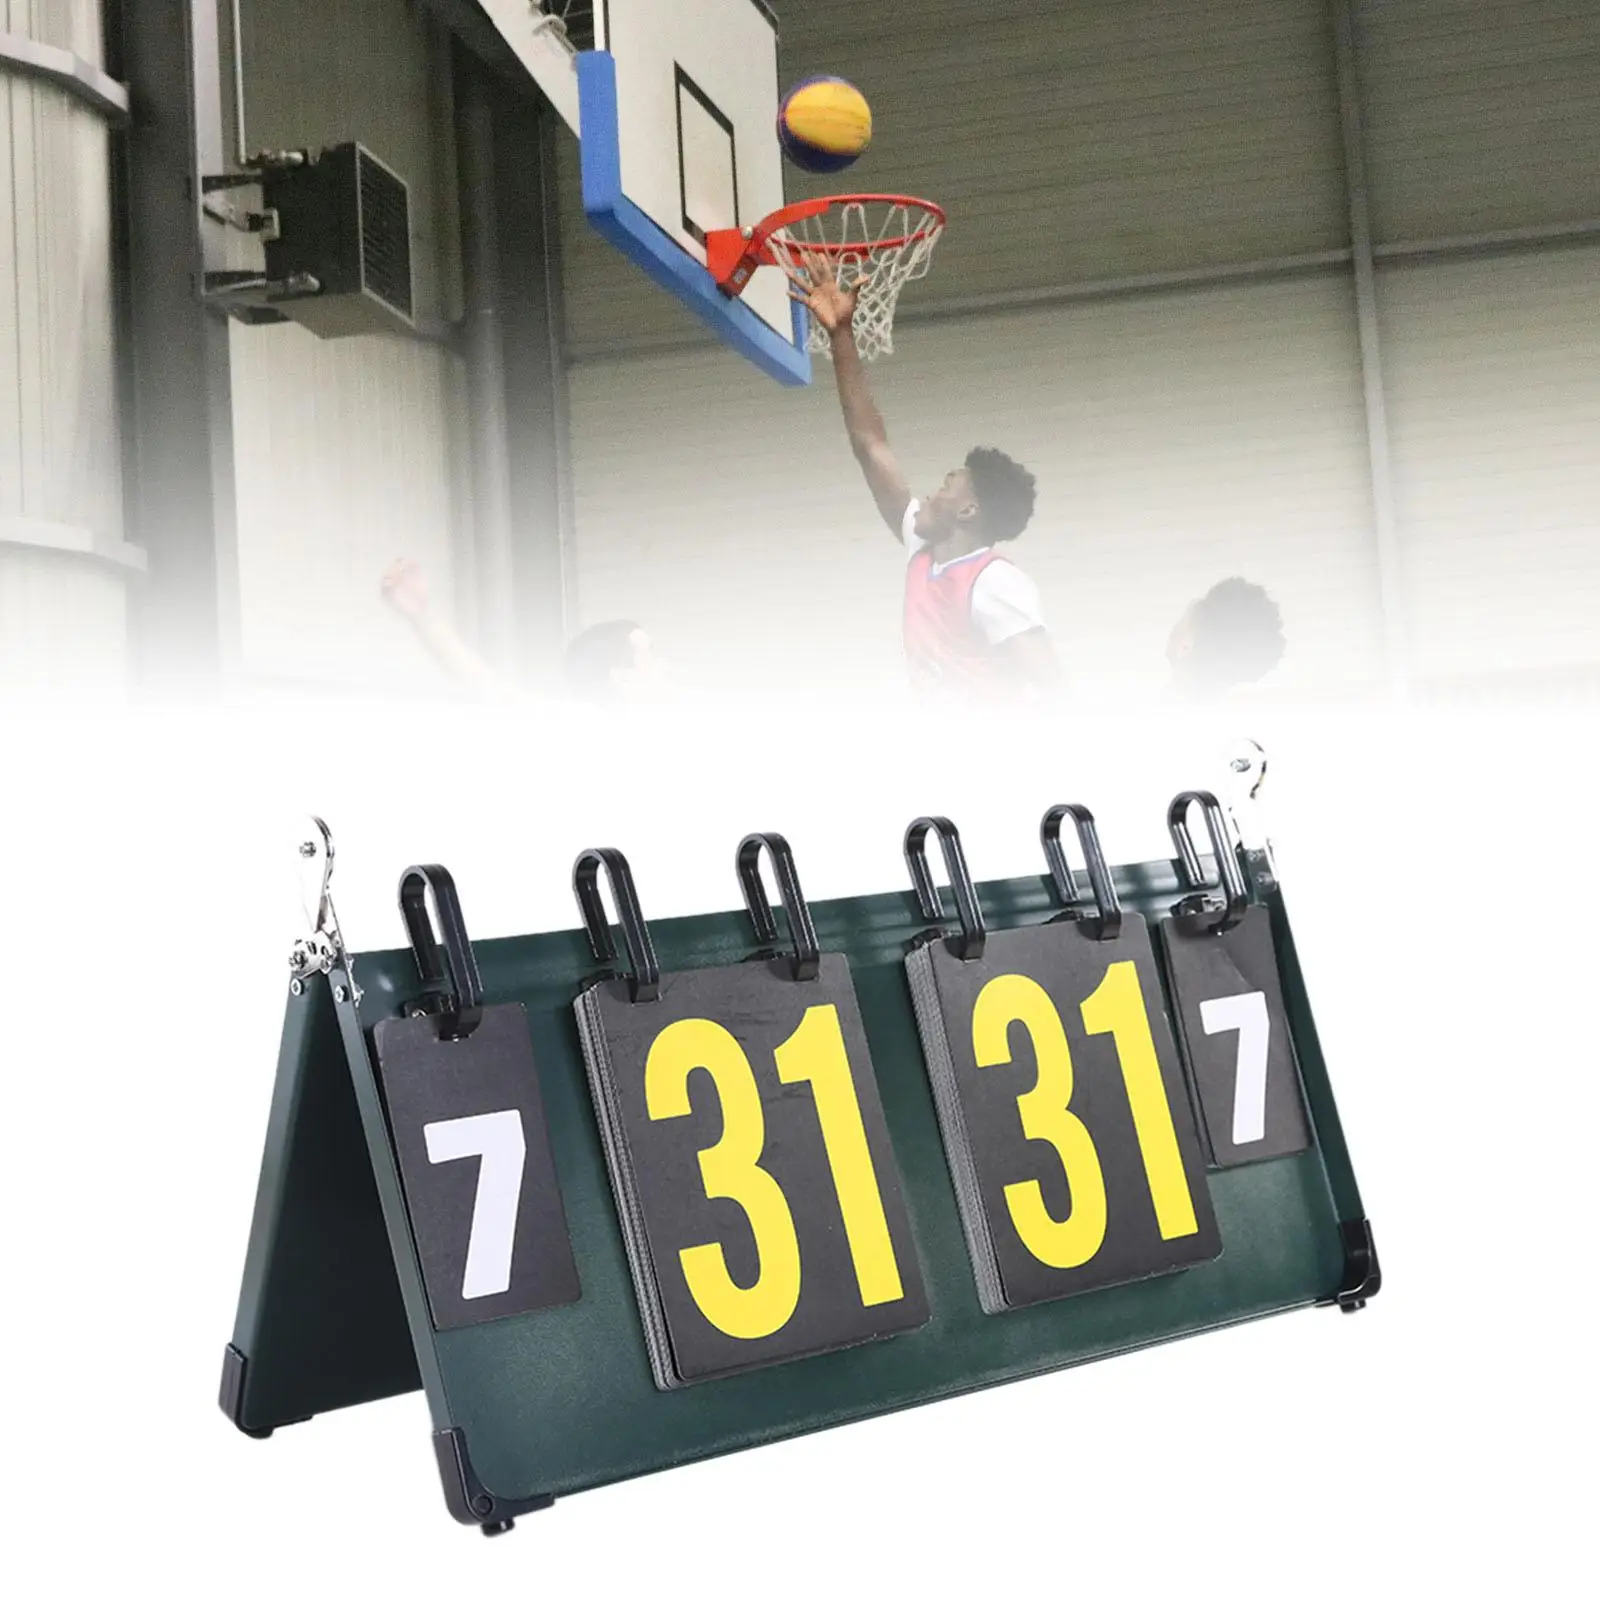 

Flip Sports Scoreboard Score Board Practical Basketball Portable Tabletop Score Flipper Score Keeper for Billiards Volleyball